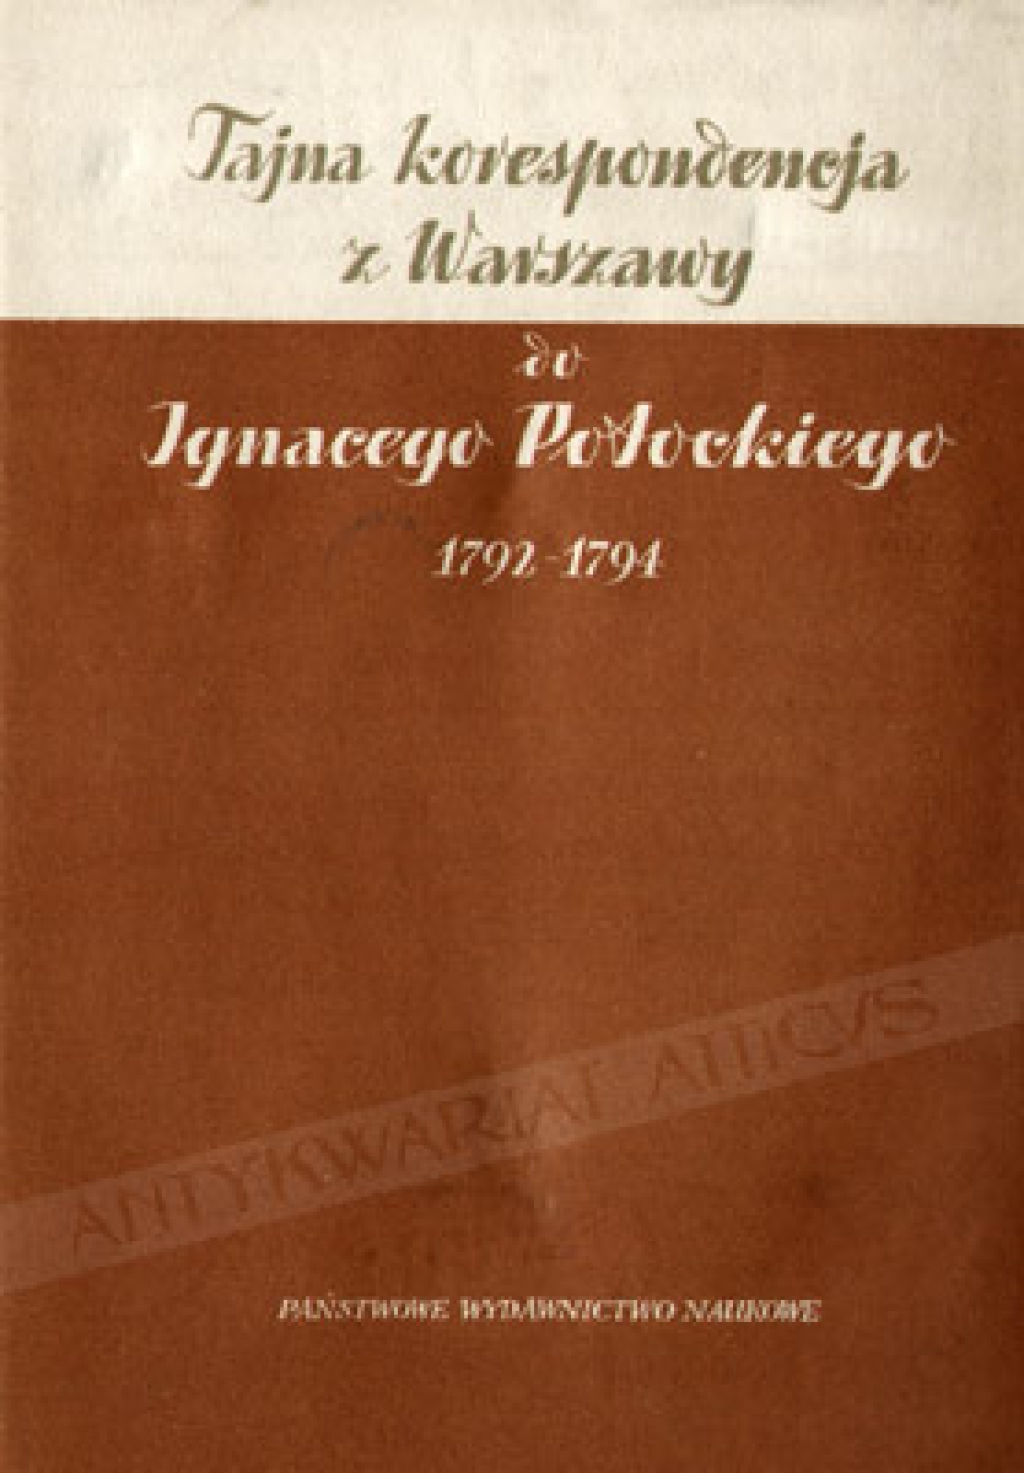 Tajna korespondencja z Warszawy 1792-1794 do Ignacego Potockiego. Jan Dembowski i inni